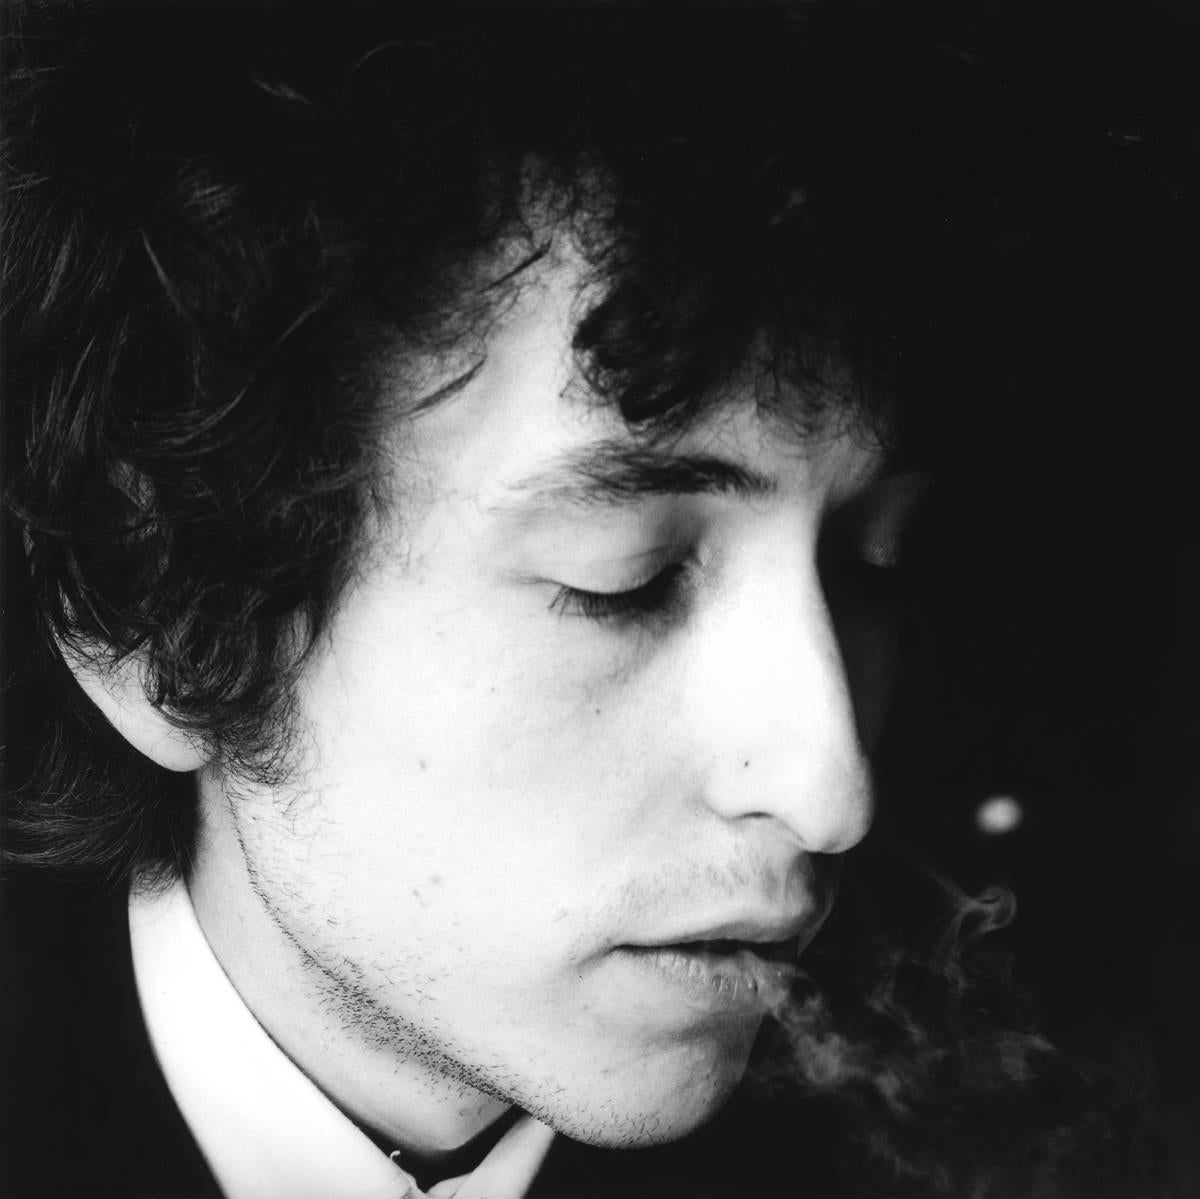 Bob Dylan, Contact 80, 1965 - Jerry Schatzberg (Photographie de portrait)
Signé au dos
Tirage gélatino-argentique
Imprimé sur du papier 20 x 24 pouces
D'une édition de 20 exemplaires

Les portraits de Jerry Schatzberg se caractérisent par leur